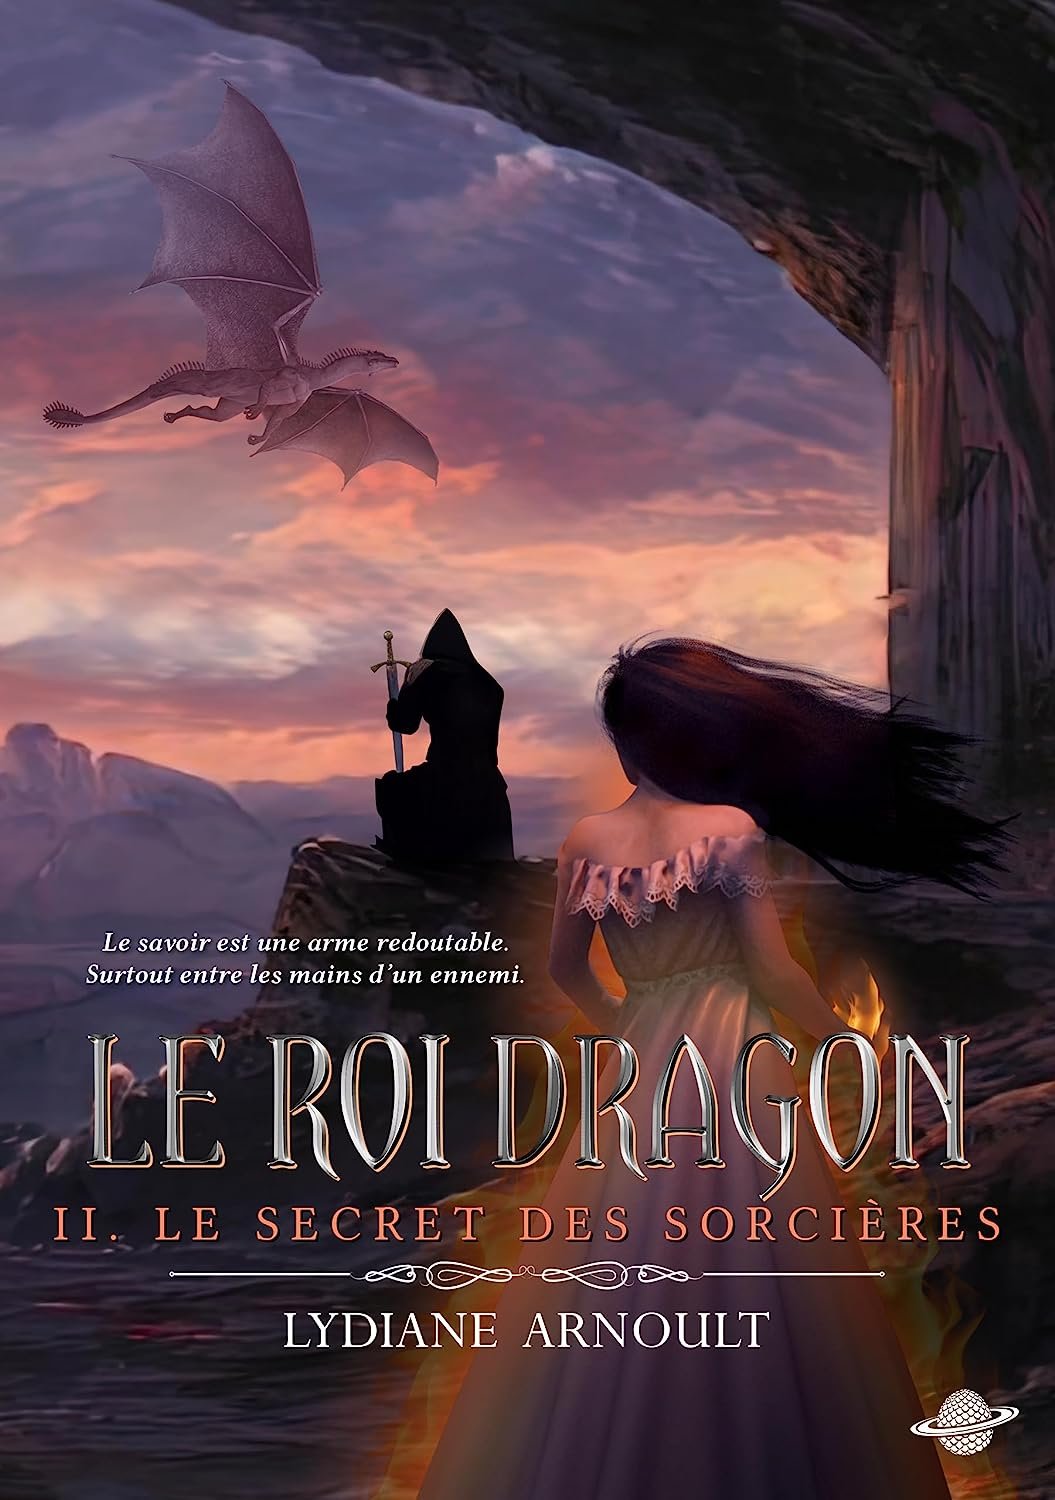 Lydiane Arnoult - Le Roi dragon Tome 2 - Le Secret des sorcières